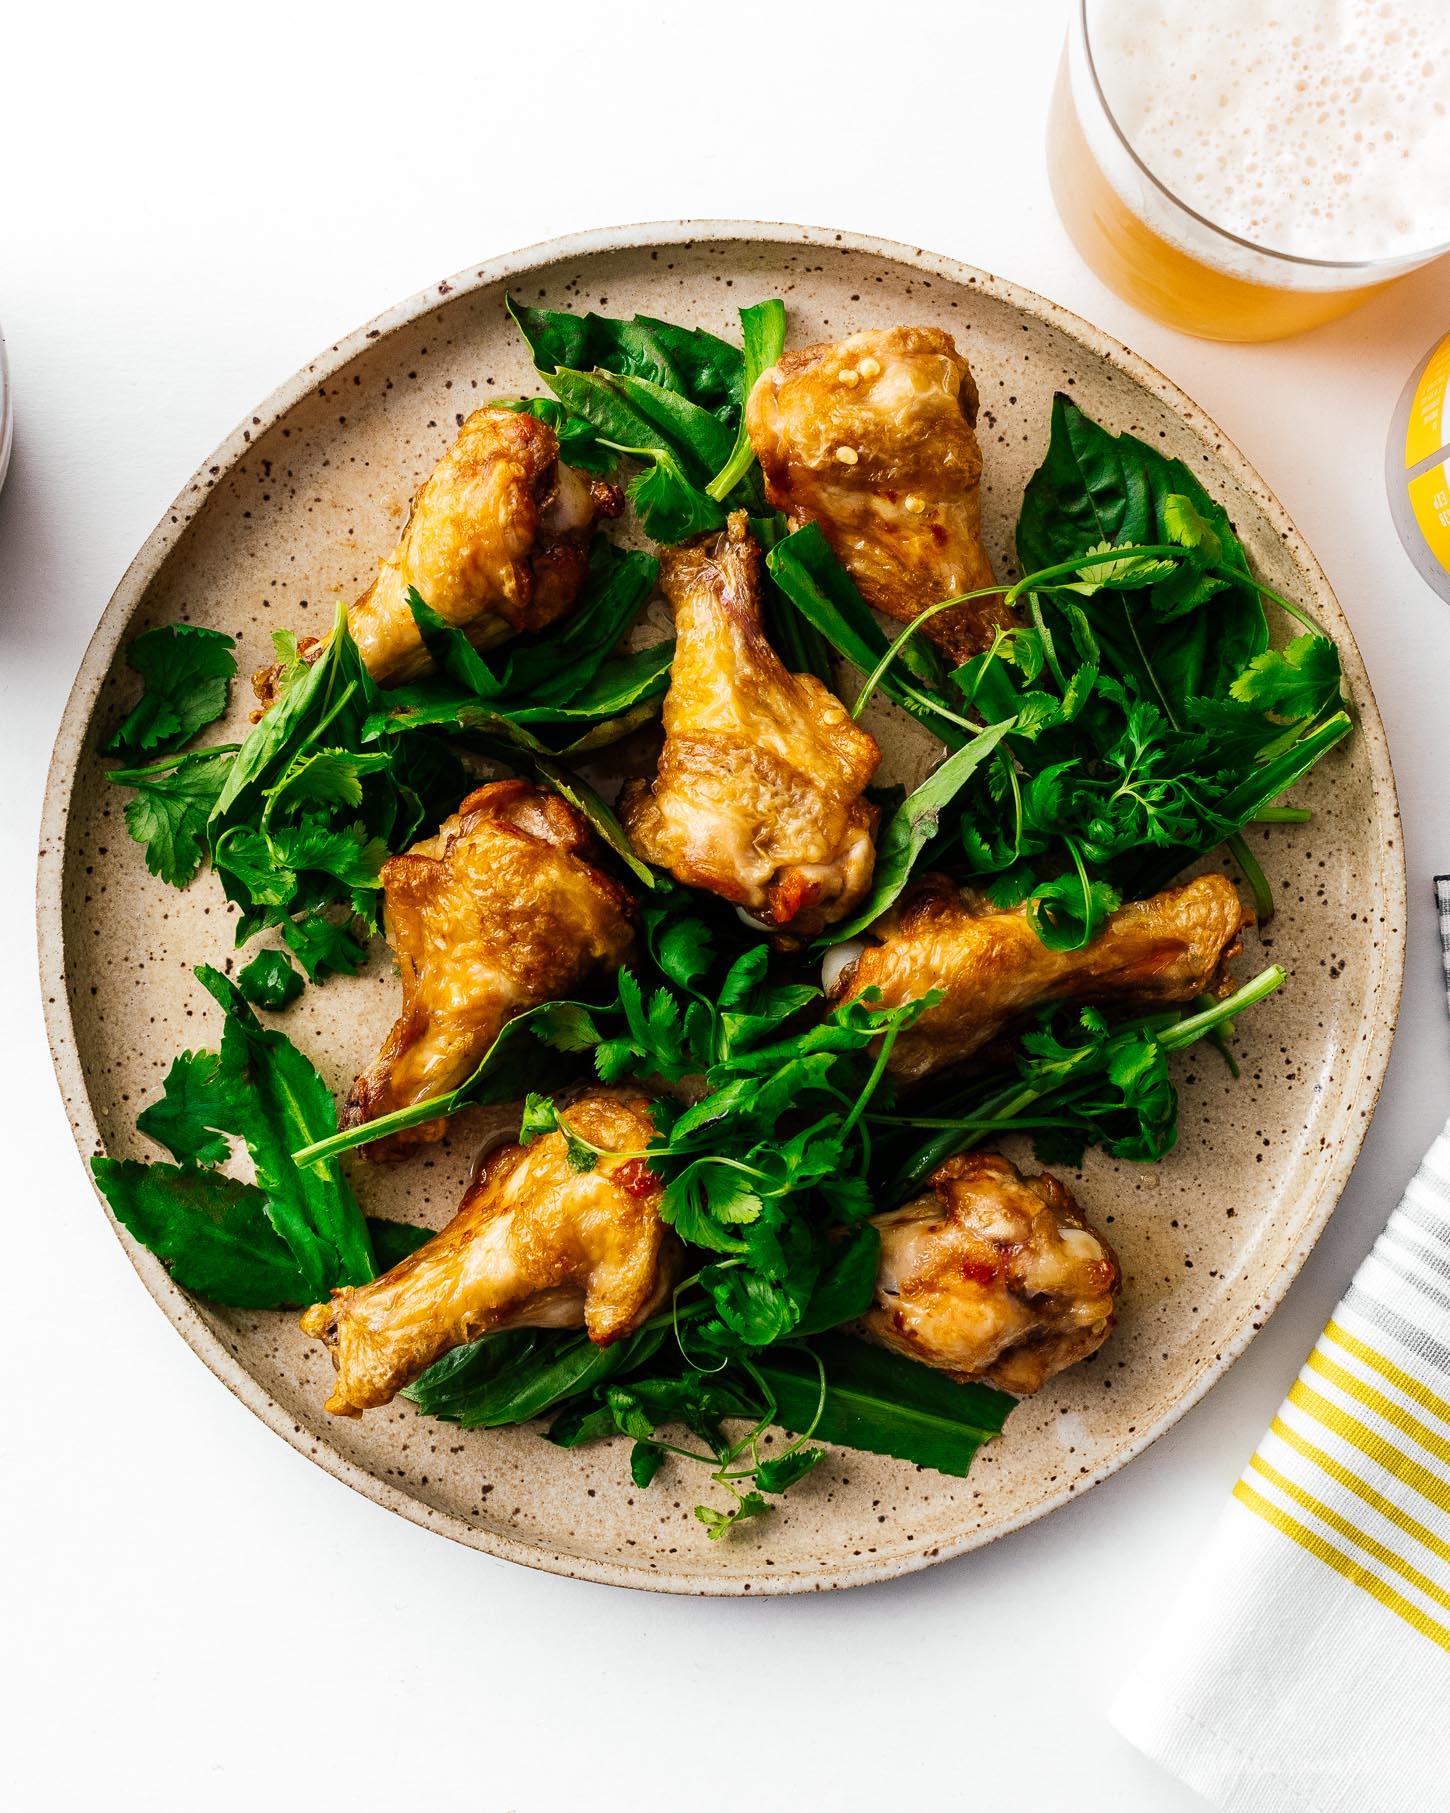 空气炸锅鸡翅如此脆，多汁，你不会相信他们不是油炸！认真的，很容易。用盐和胡椒吃裸体，或用盐和胡椒，或扔在咸，甜，酸越南鱼酱中，这会让你乞求更多。#airfryer #chickenwings #wings #airfryerwings #recipes #dinner #appies #vietnamesfood